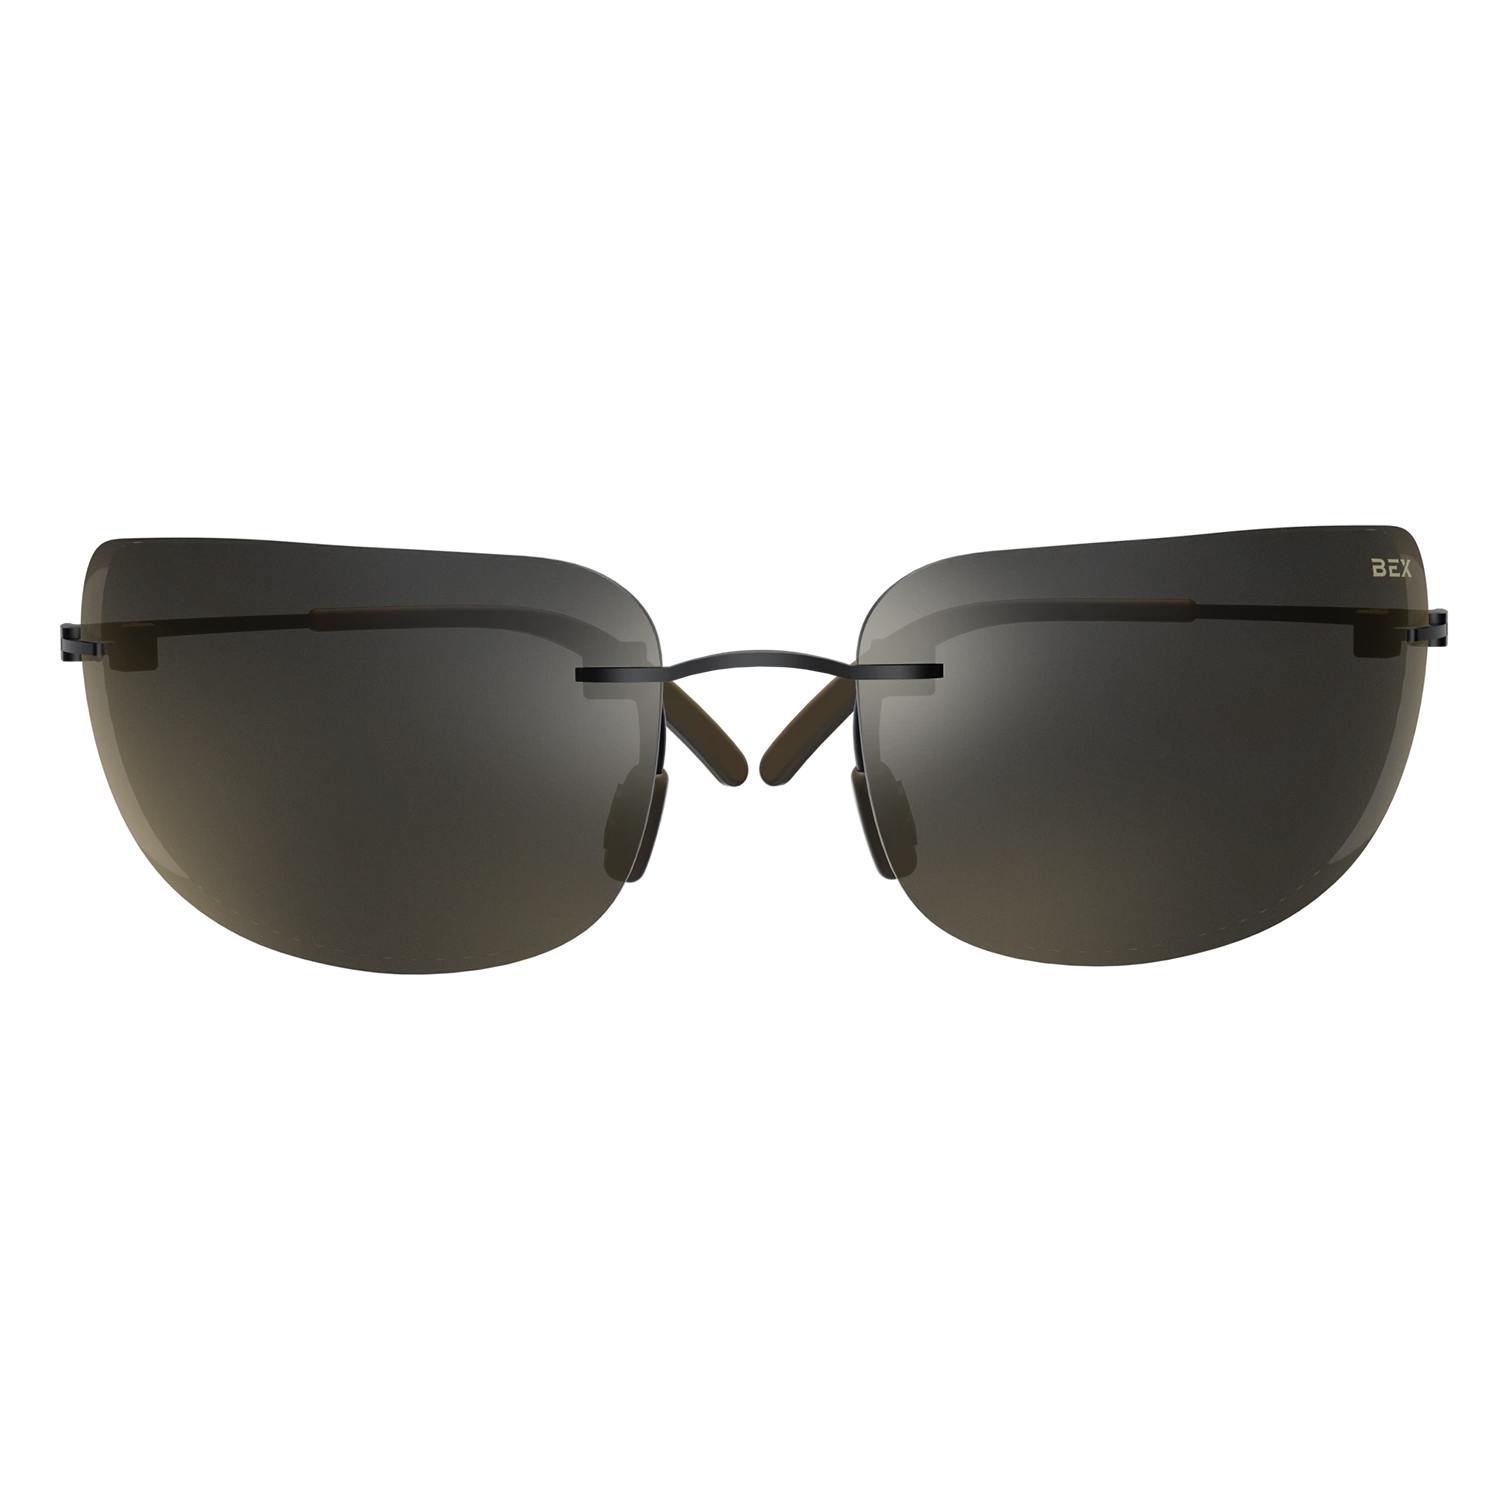 Full Black Frameless Sunglasses With Black Shades